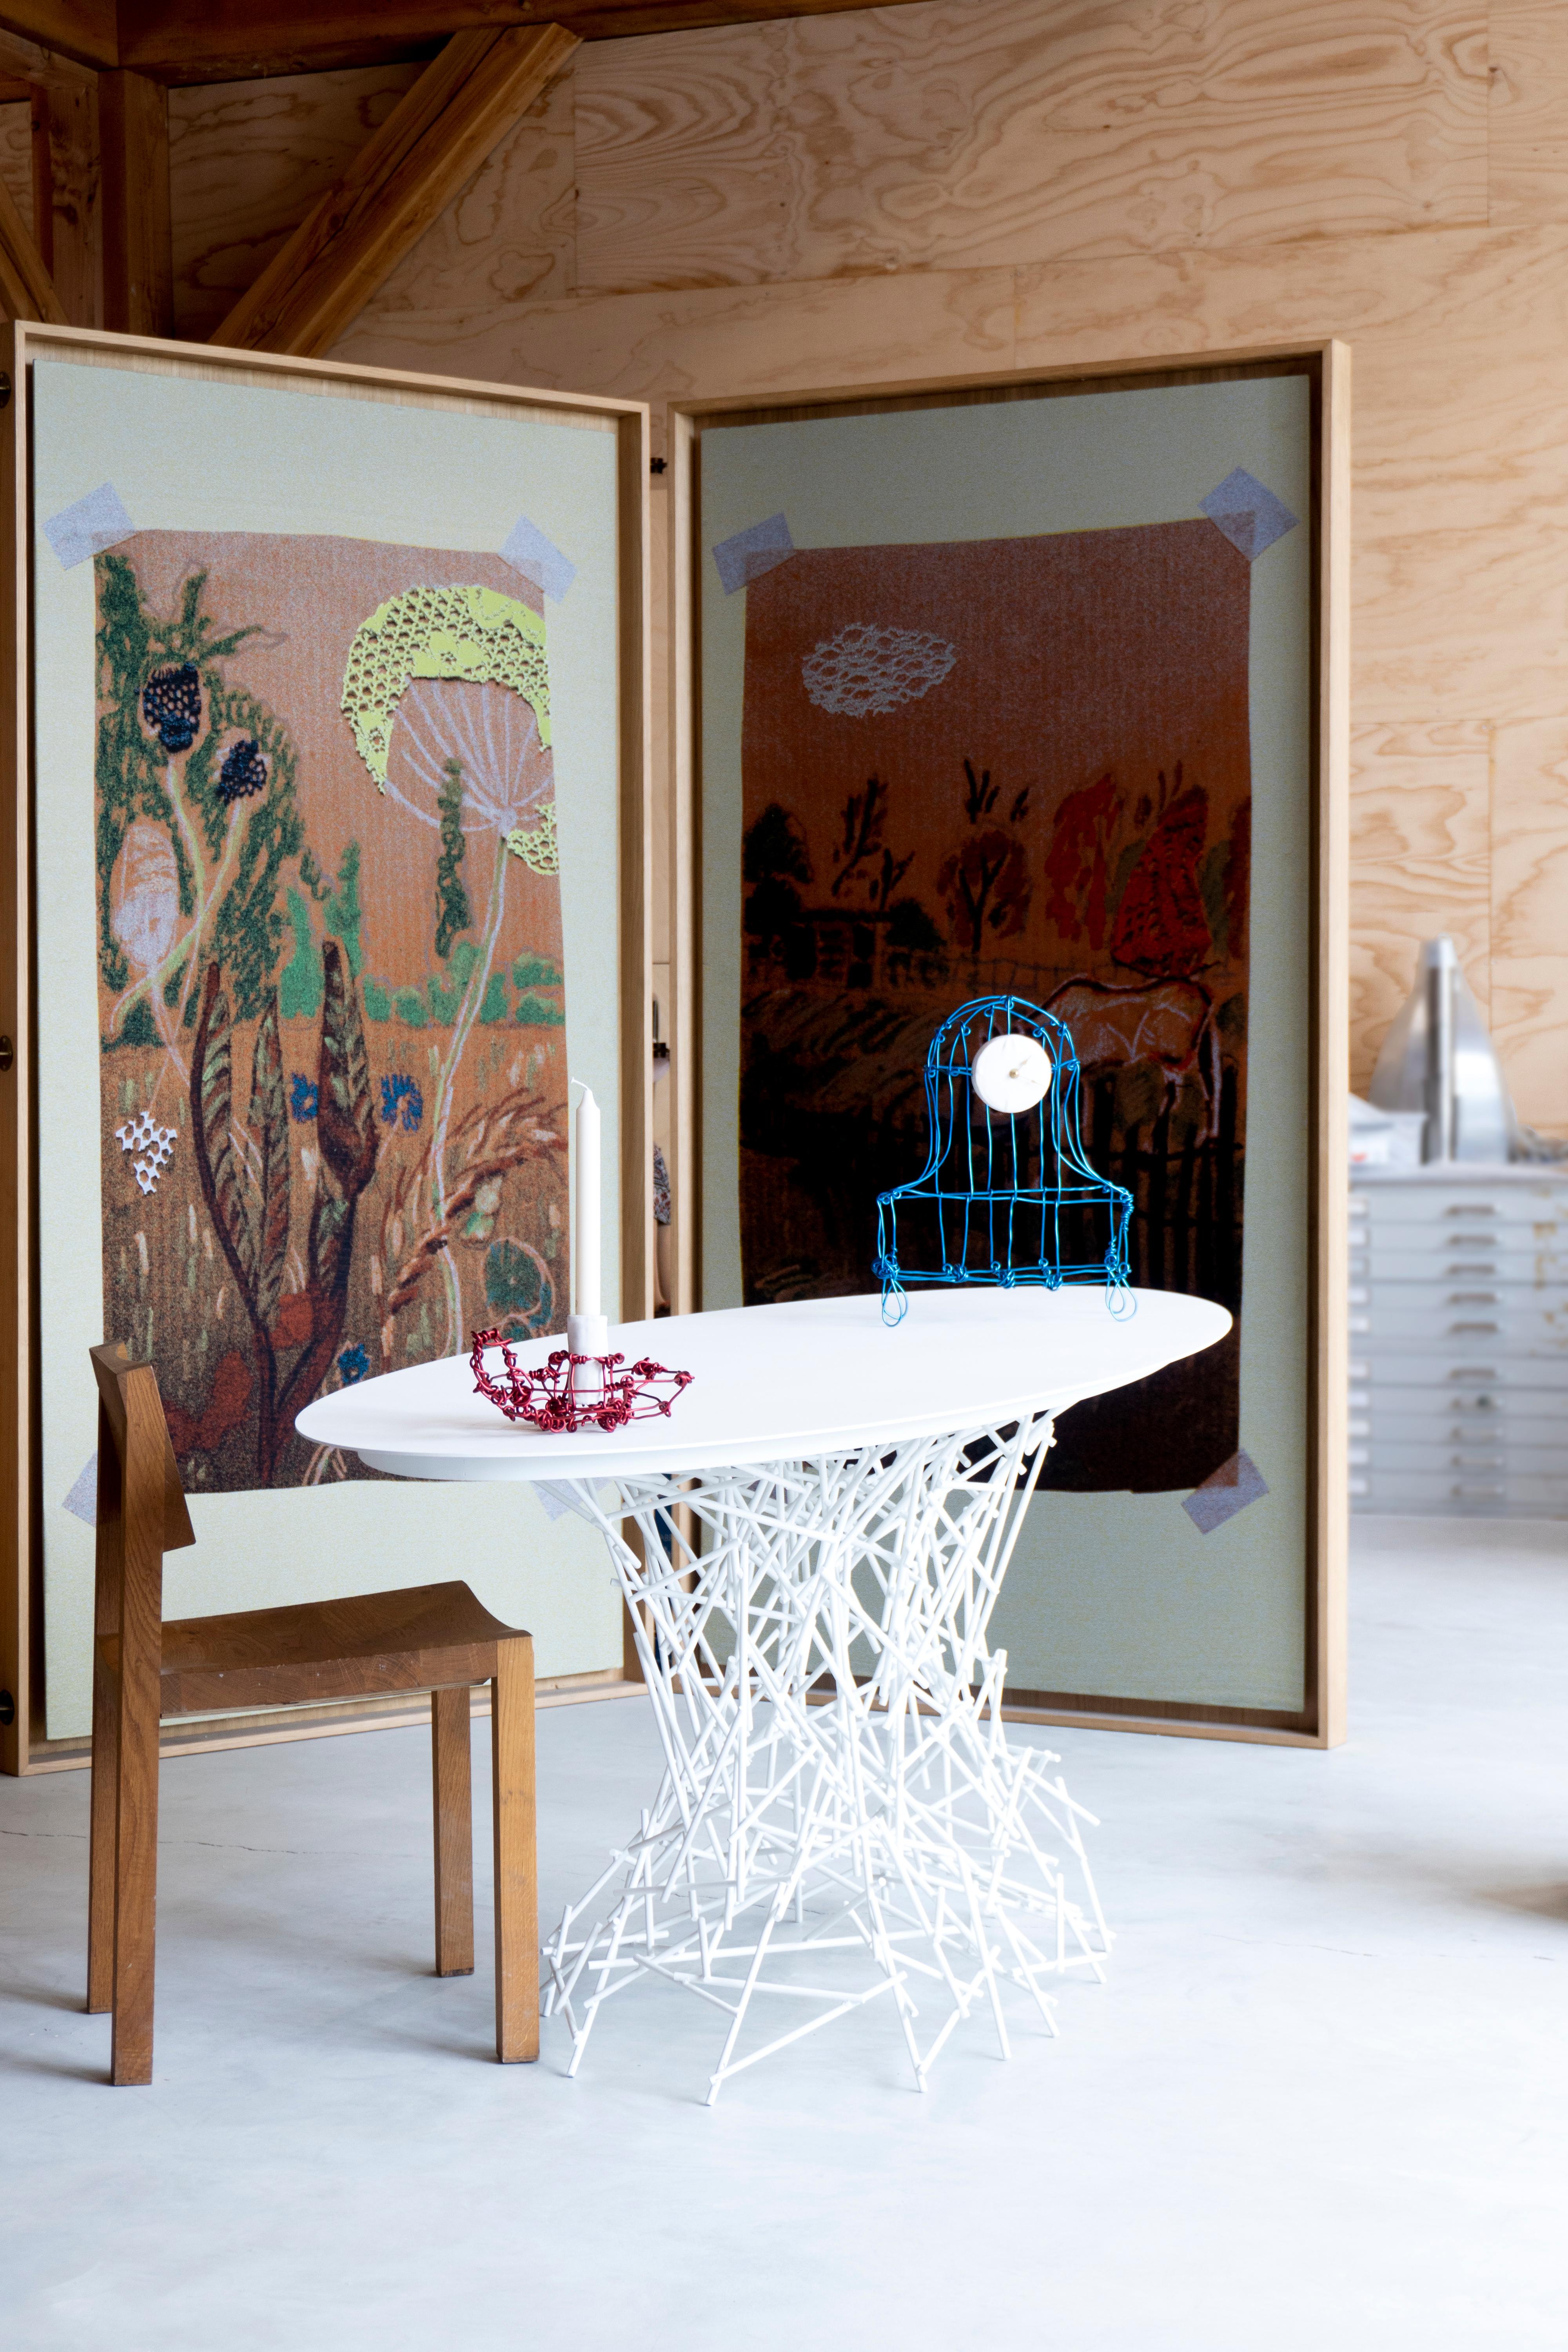 Sketched est une collection de meubles design inspirée par sa passion pour les peintures expressionnistes abstraites. L'atelier est le lieu où Joost s'engage dans l'expérience de la conception comme un acte intensément physique. 
La table est